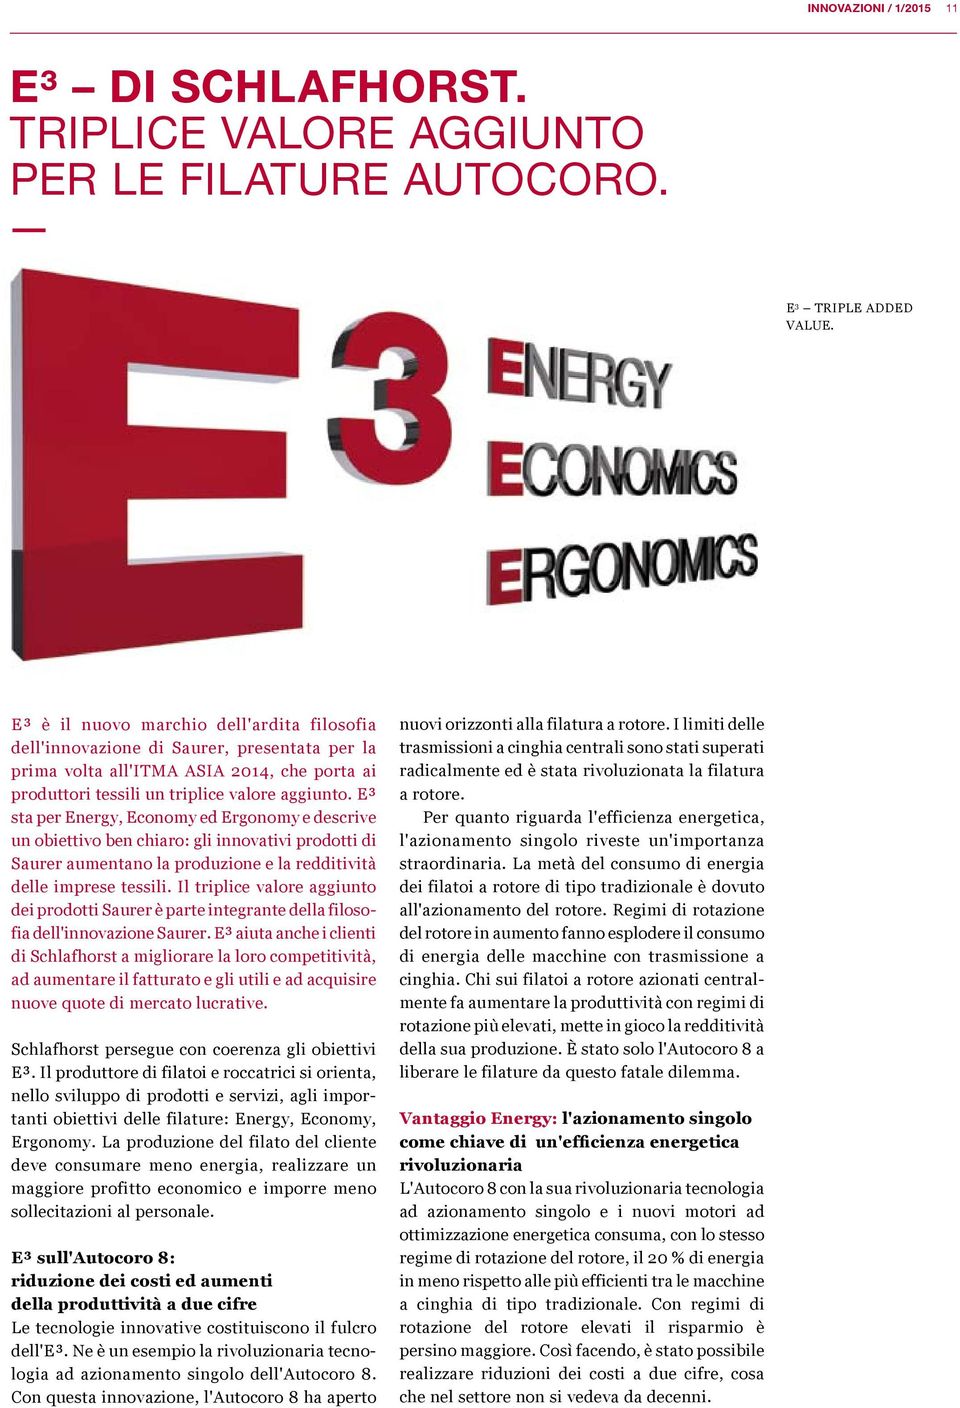 E³ sta per Energy, Economy ed Ergonomy e descrive un obiettivo ben chiaro: gli innovativi prodotti di Saurer aumentano la produzione e la redditività delle imprese tessili.